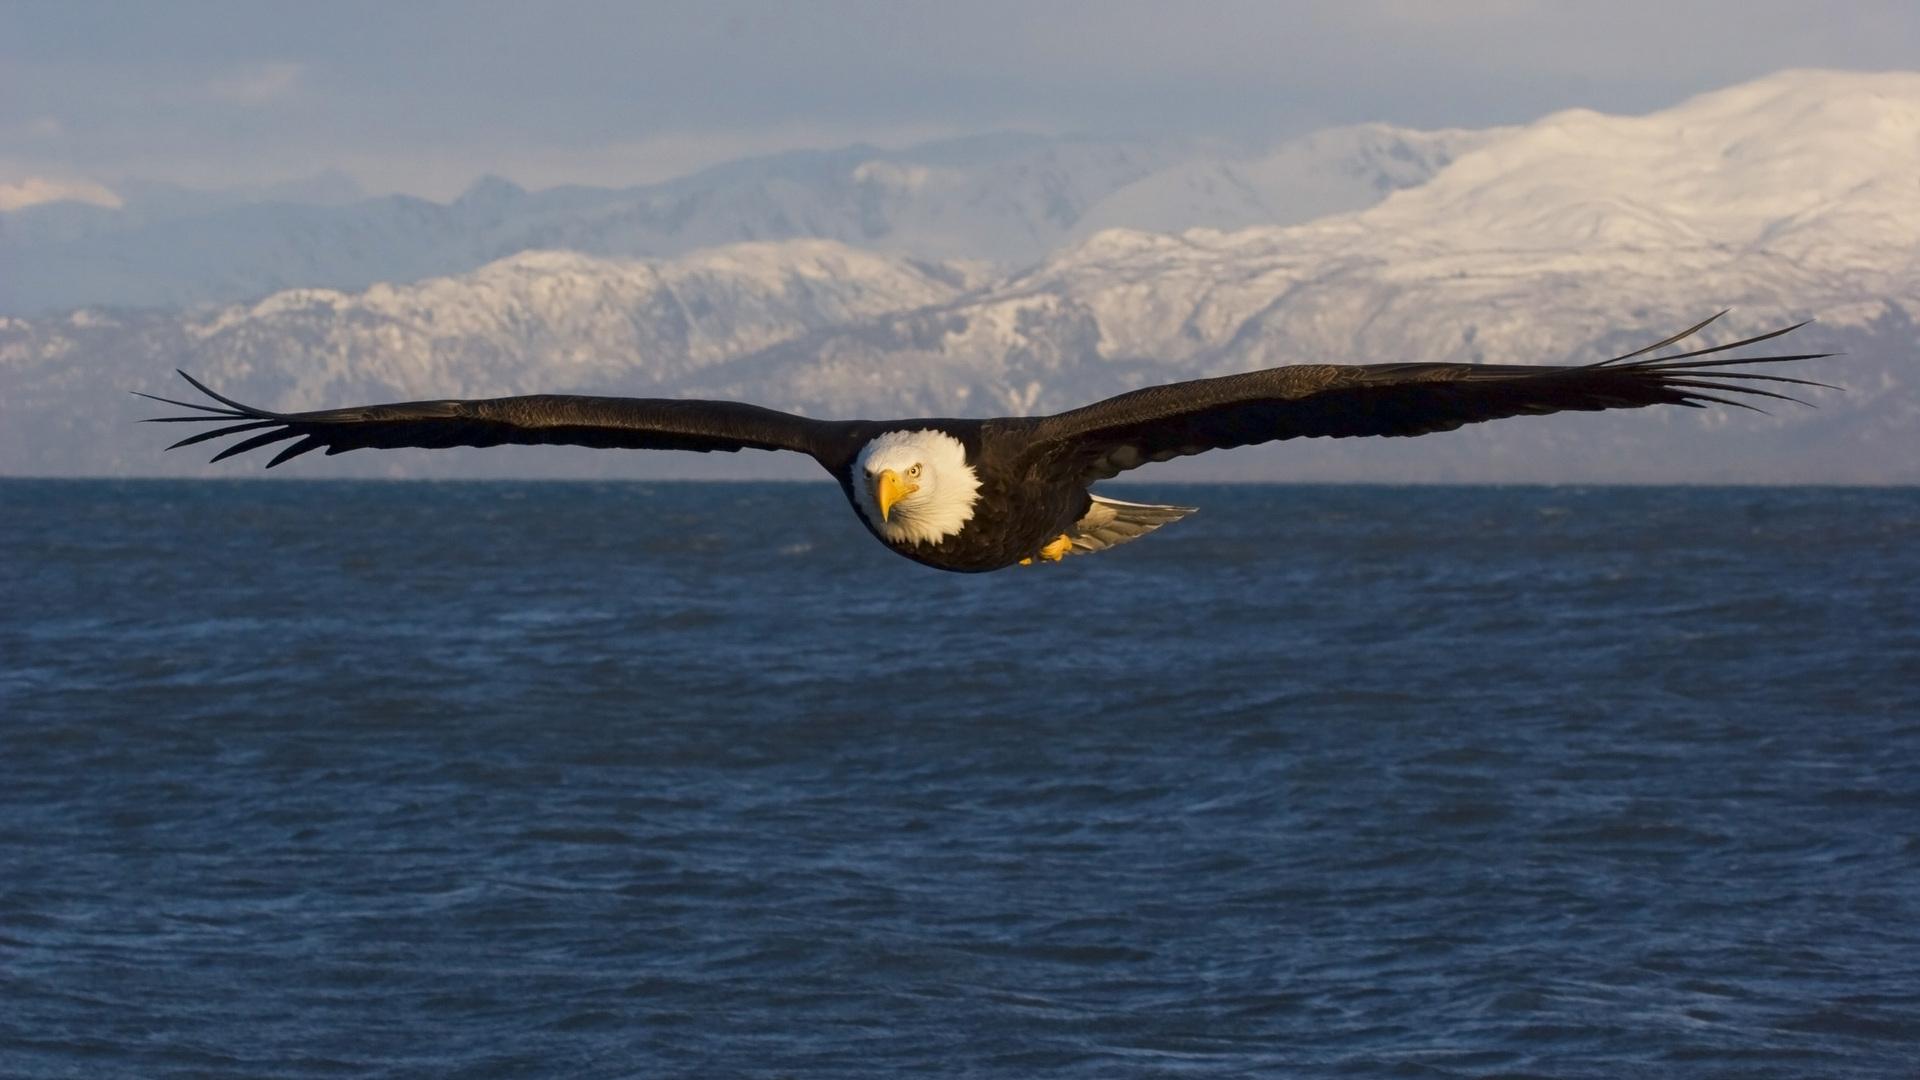 mobile desktop background bird eagles pictures download